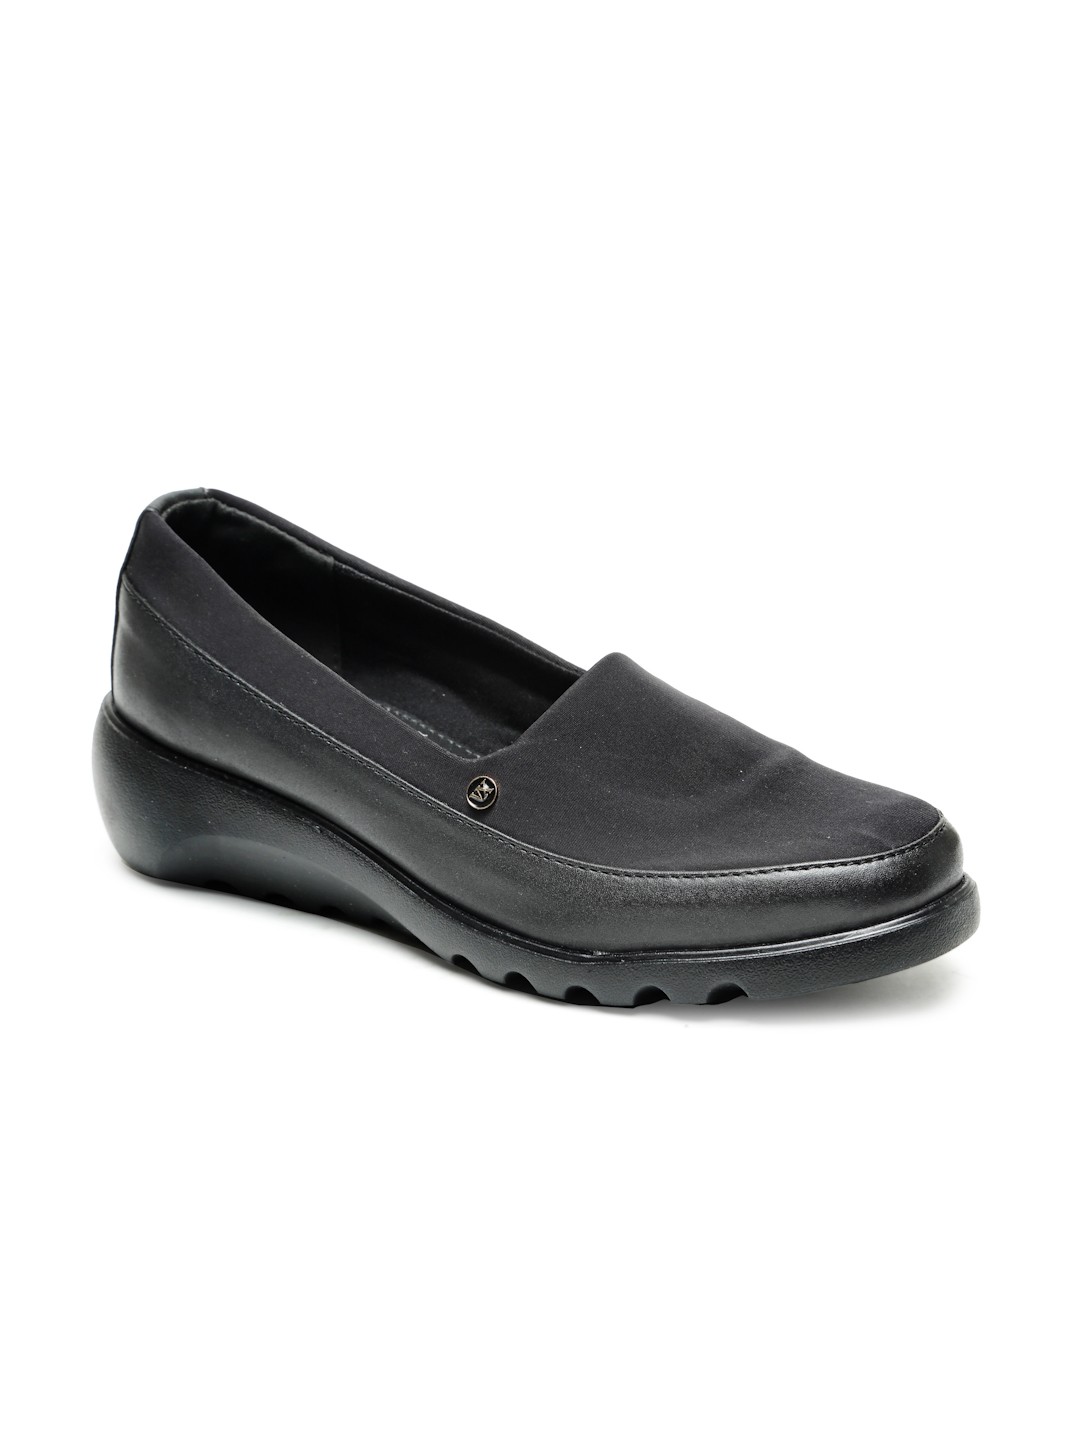 Buy Von Wellx Germany Comfort Women's Black Casual Shoes Elsa Online in Kochi